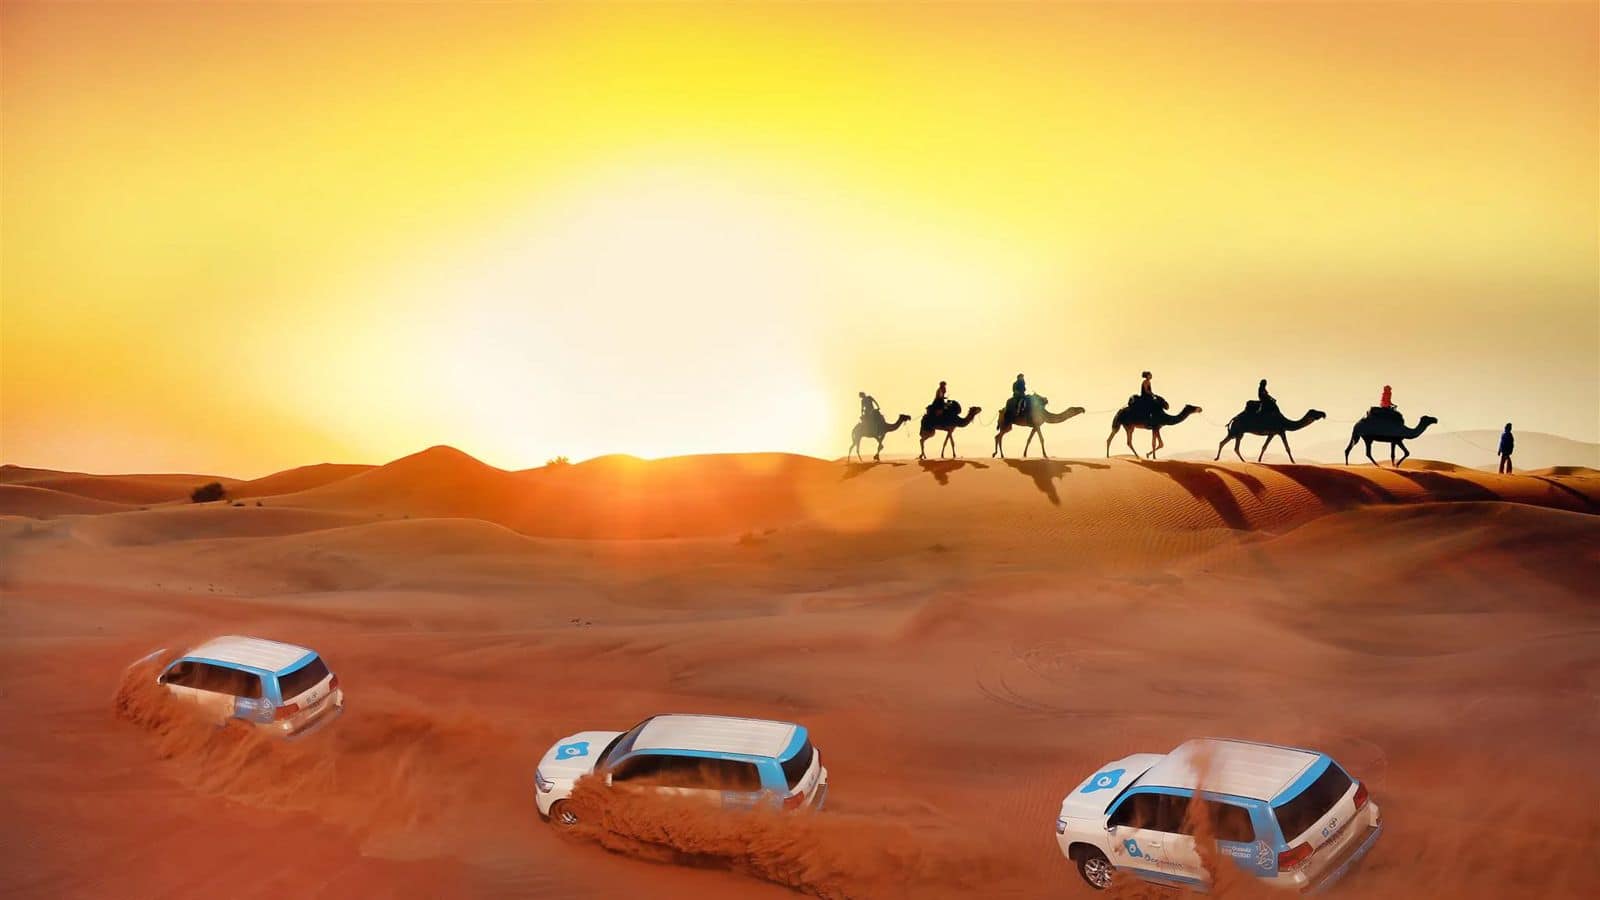 Go for these thrilling desert safari adventures in Dubai, UAE